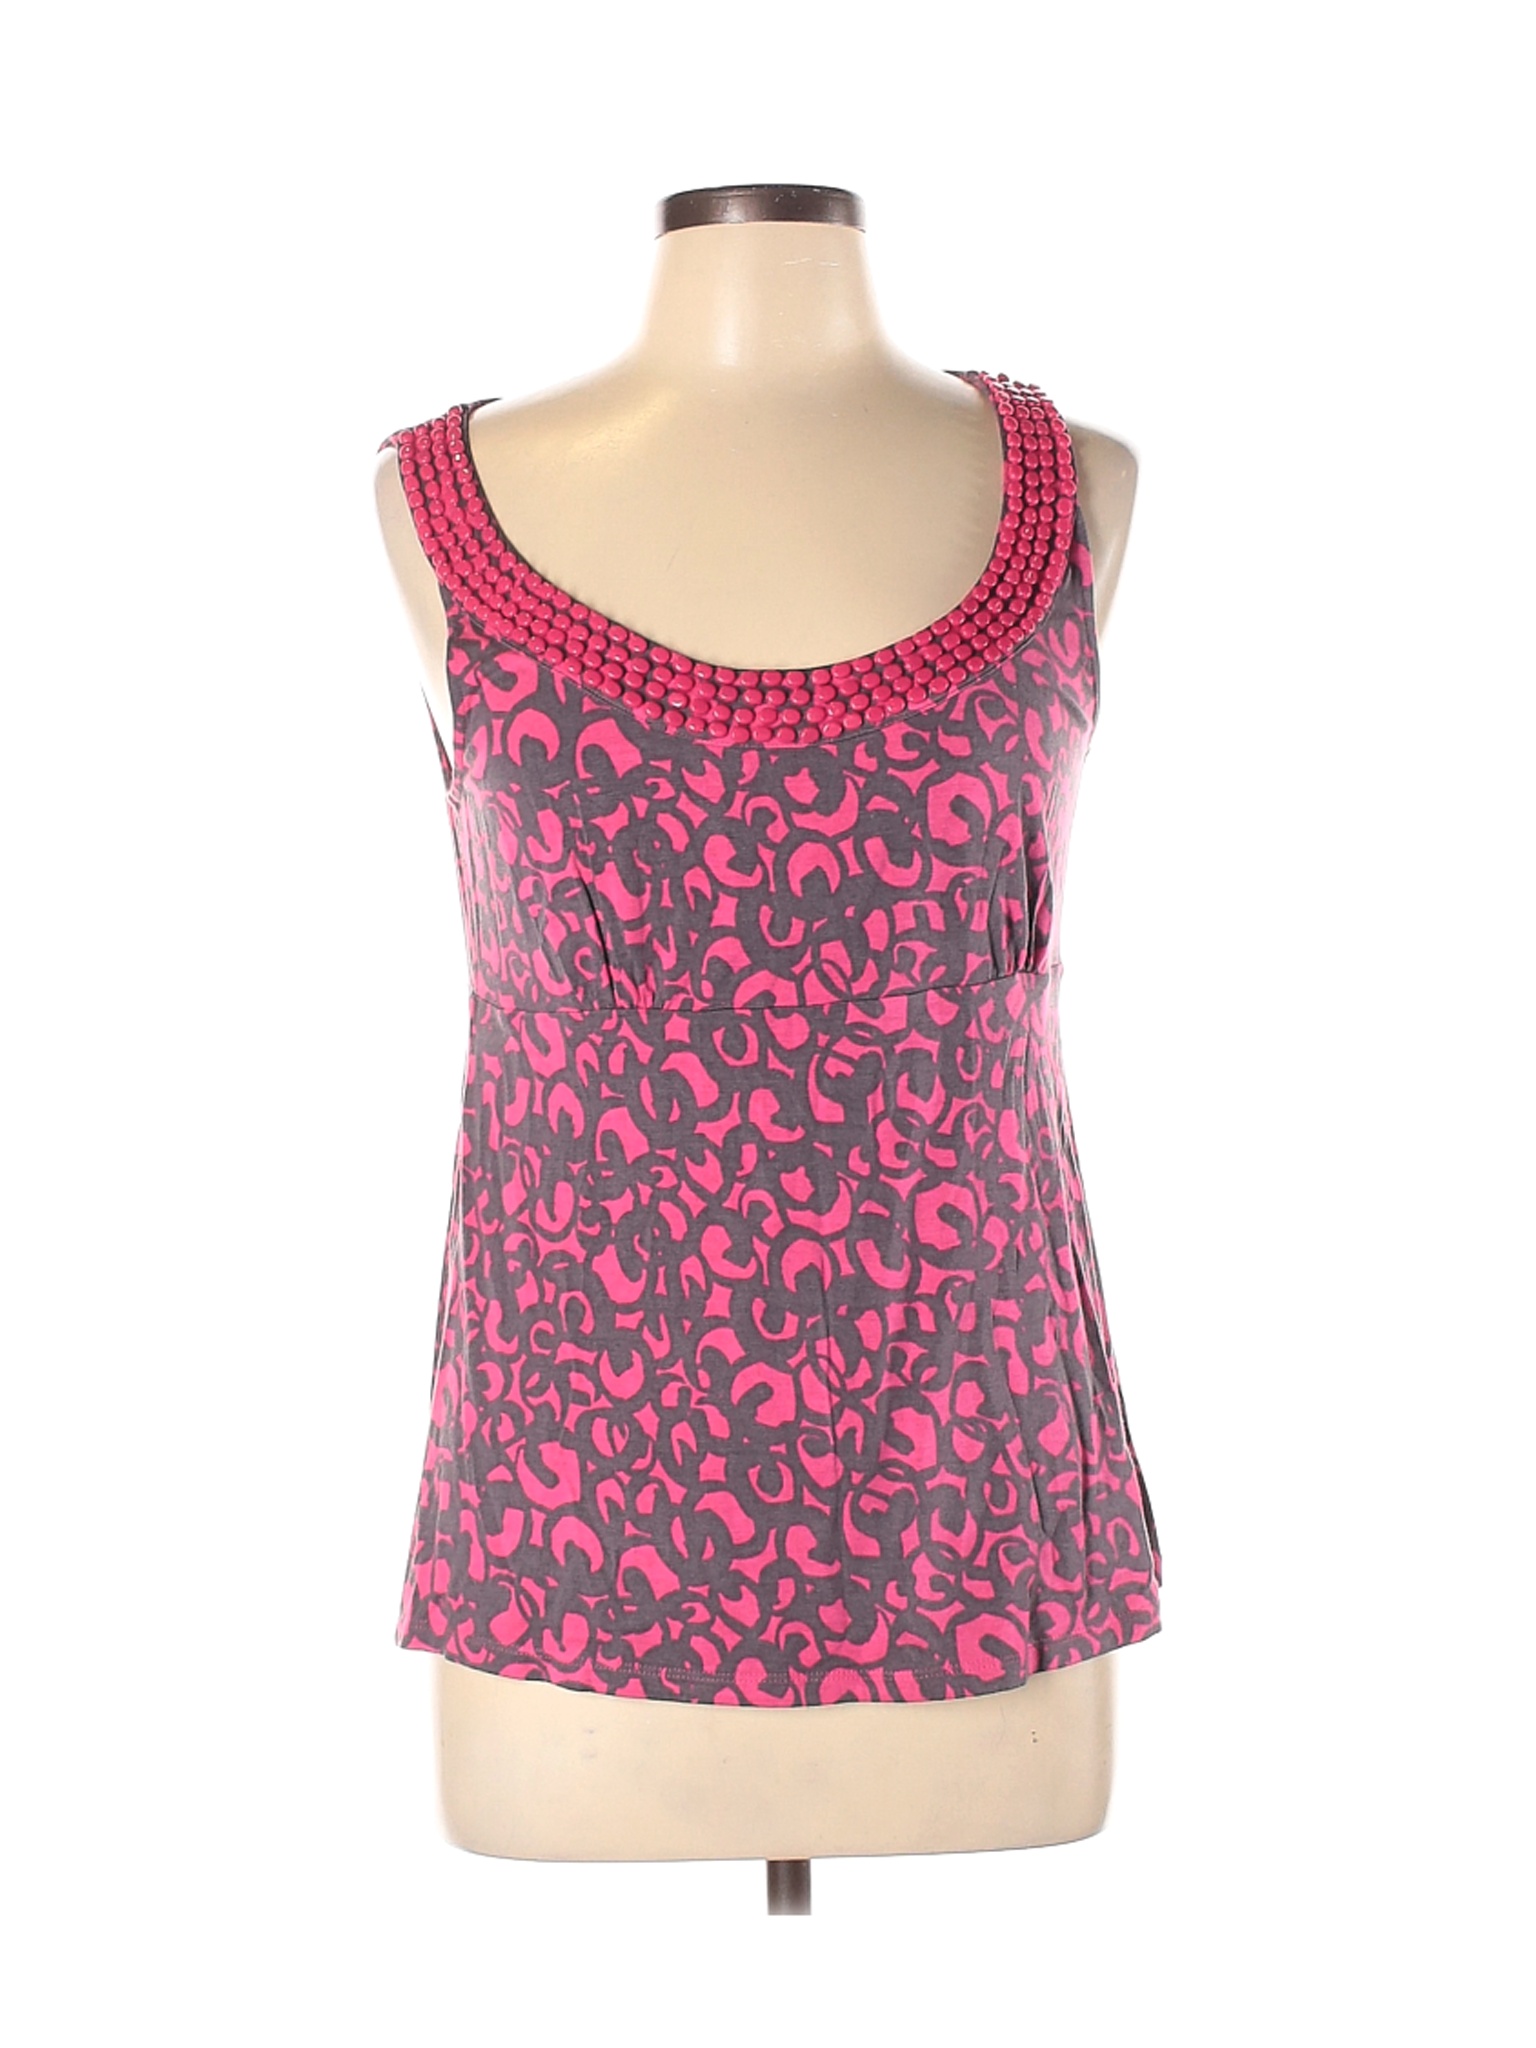 Boden Women Pink Sleeveless Top 10 | eBay